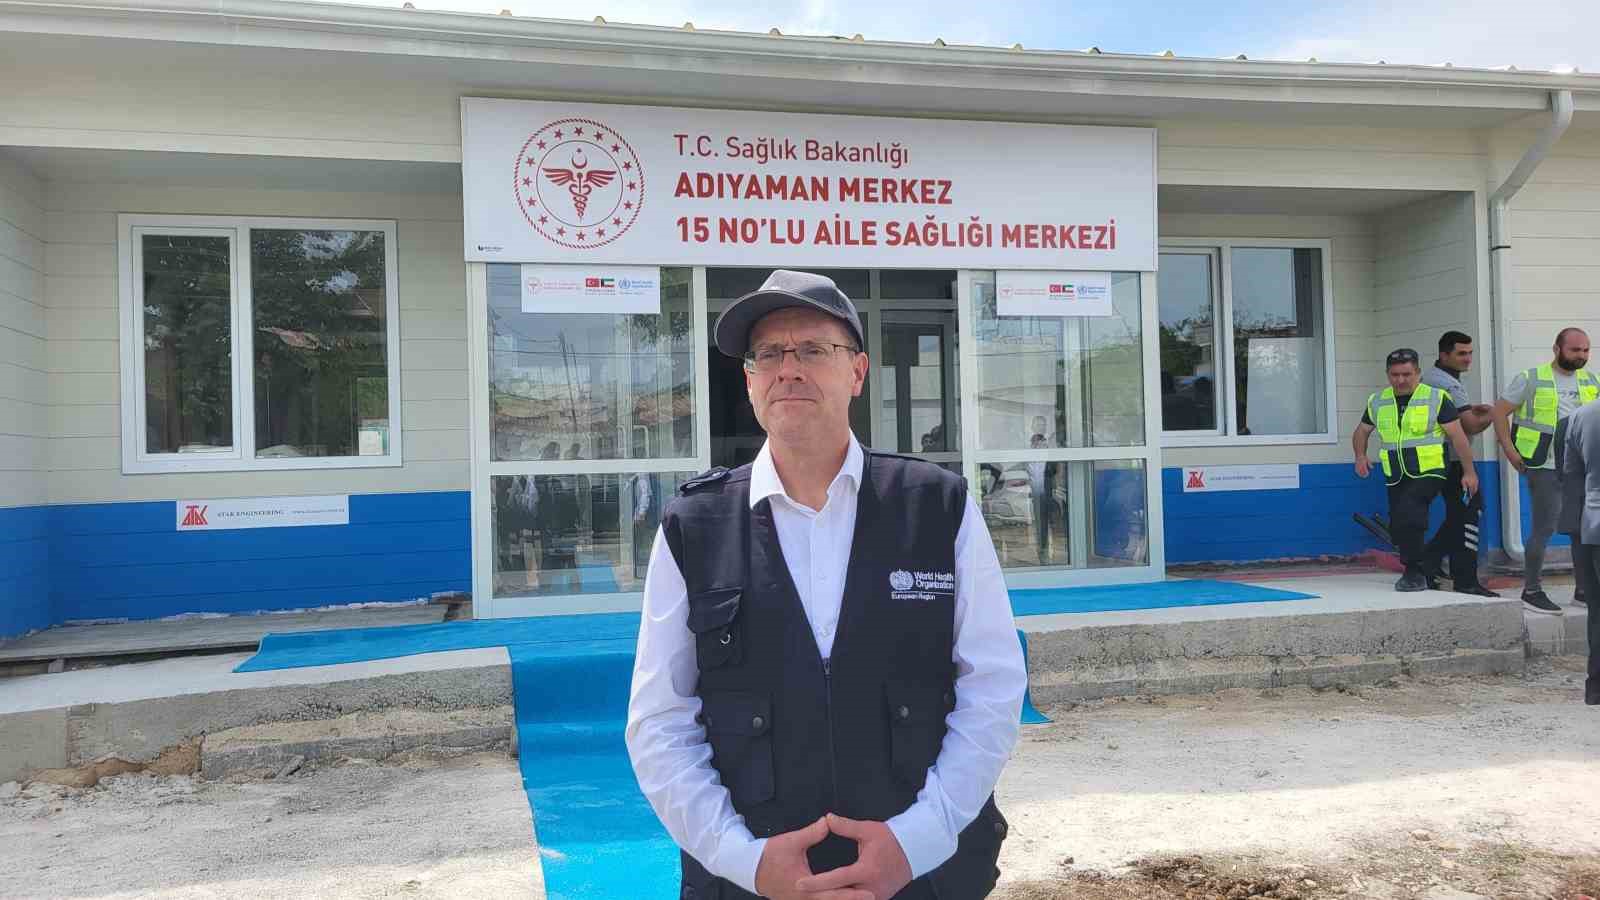 DSÖ Avrupa Bölge Direktörü Dr. Hans Kluge’den Türkiye’ye Gazze teşekkürü
